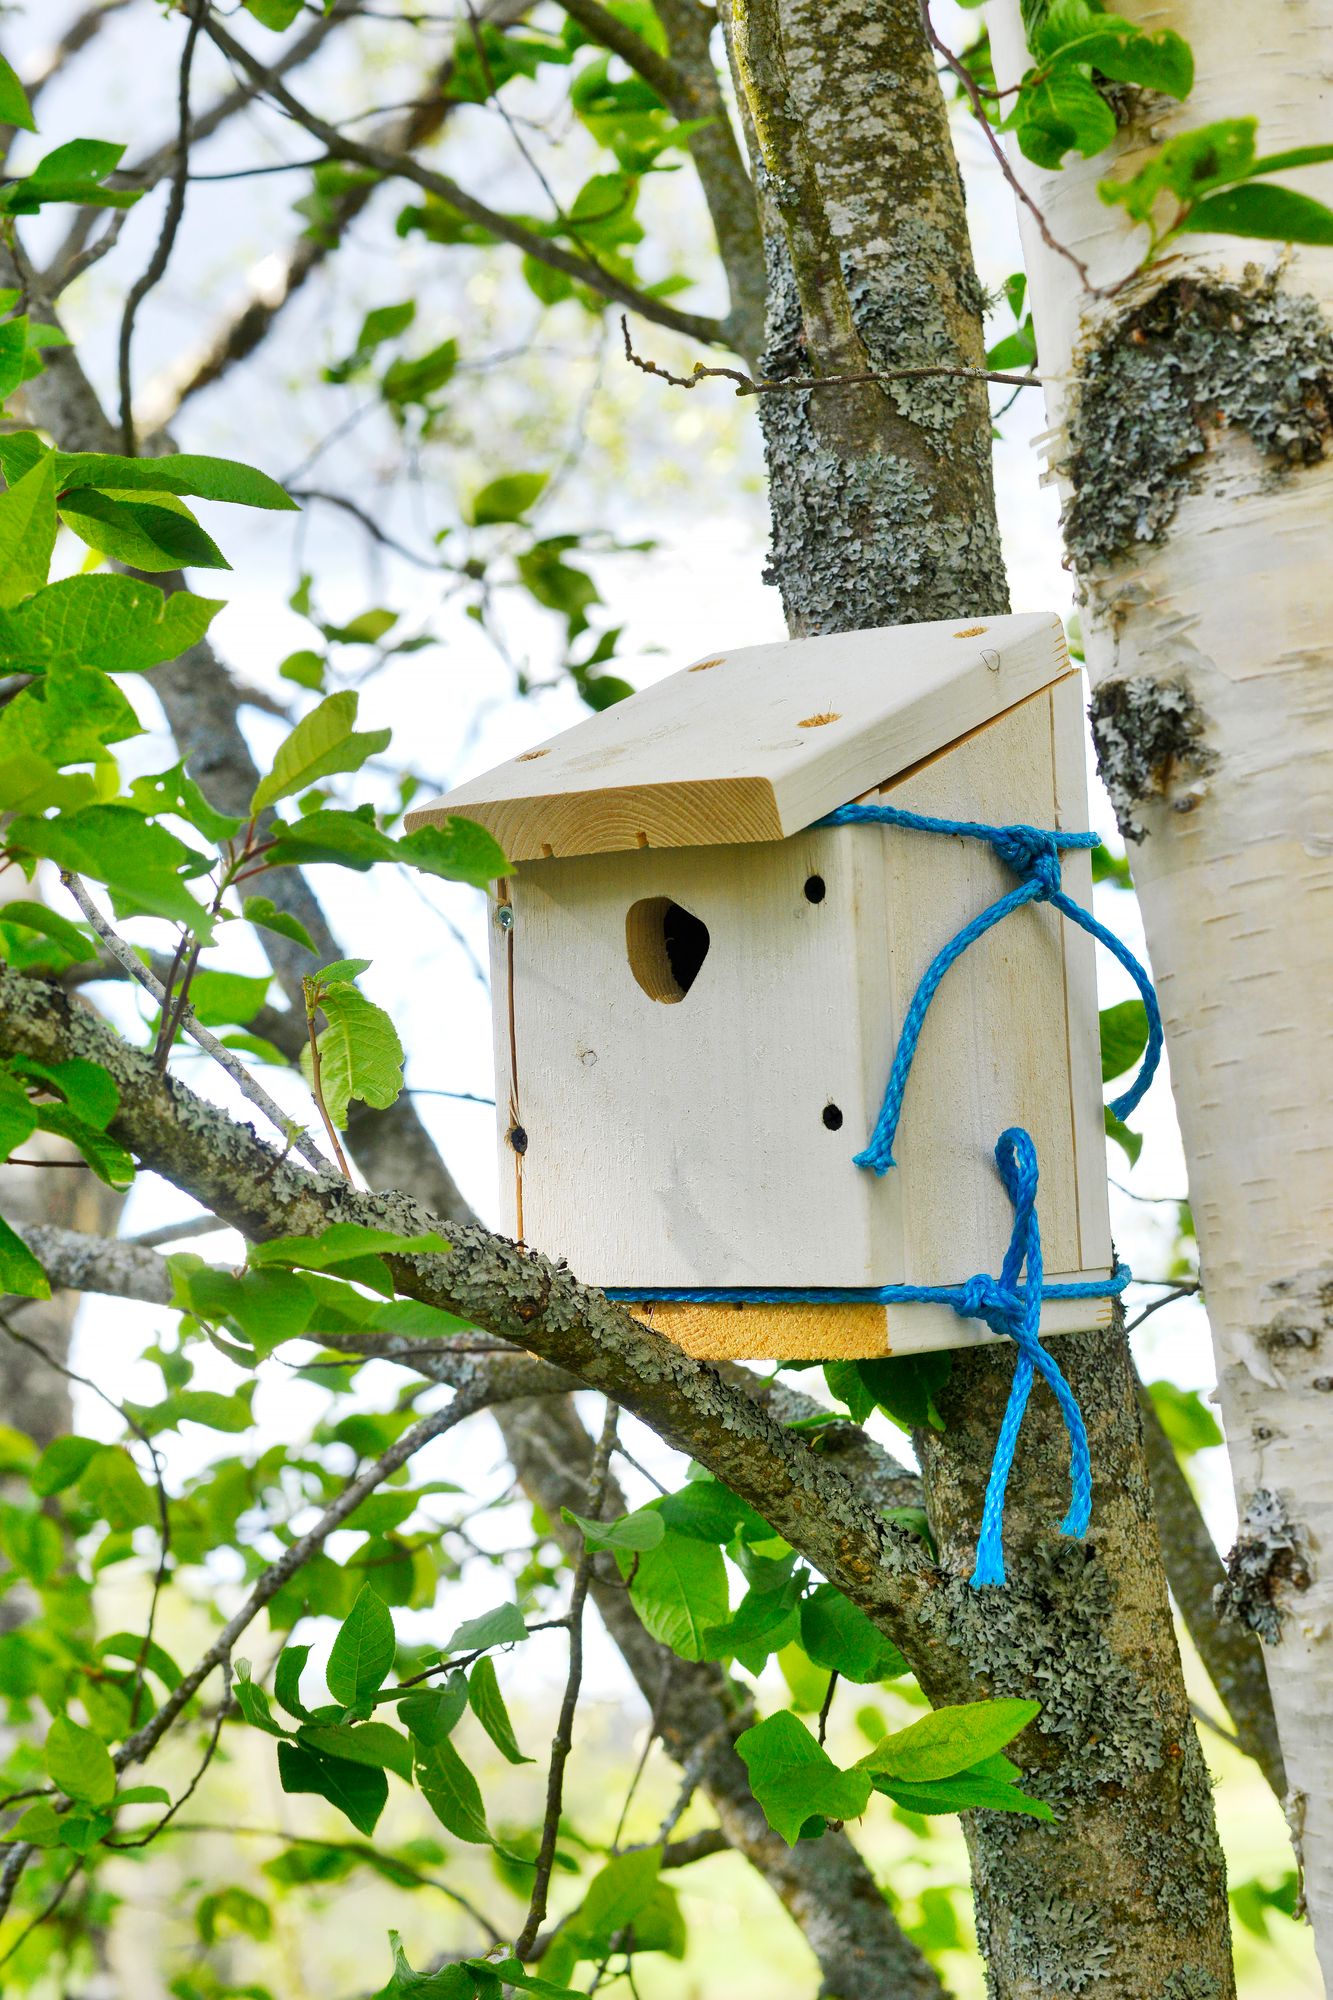 Linnunpöntöt valmistuivat puutyökurssilla, ja nyt perhe seurailee lintukirjan kanssa, minkälaisia visertäjiä pönttöihin muuttaa. © Juha Harju